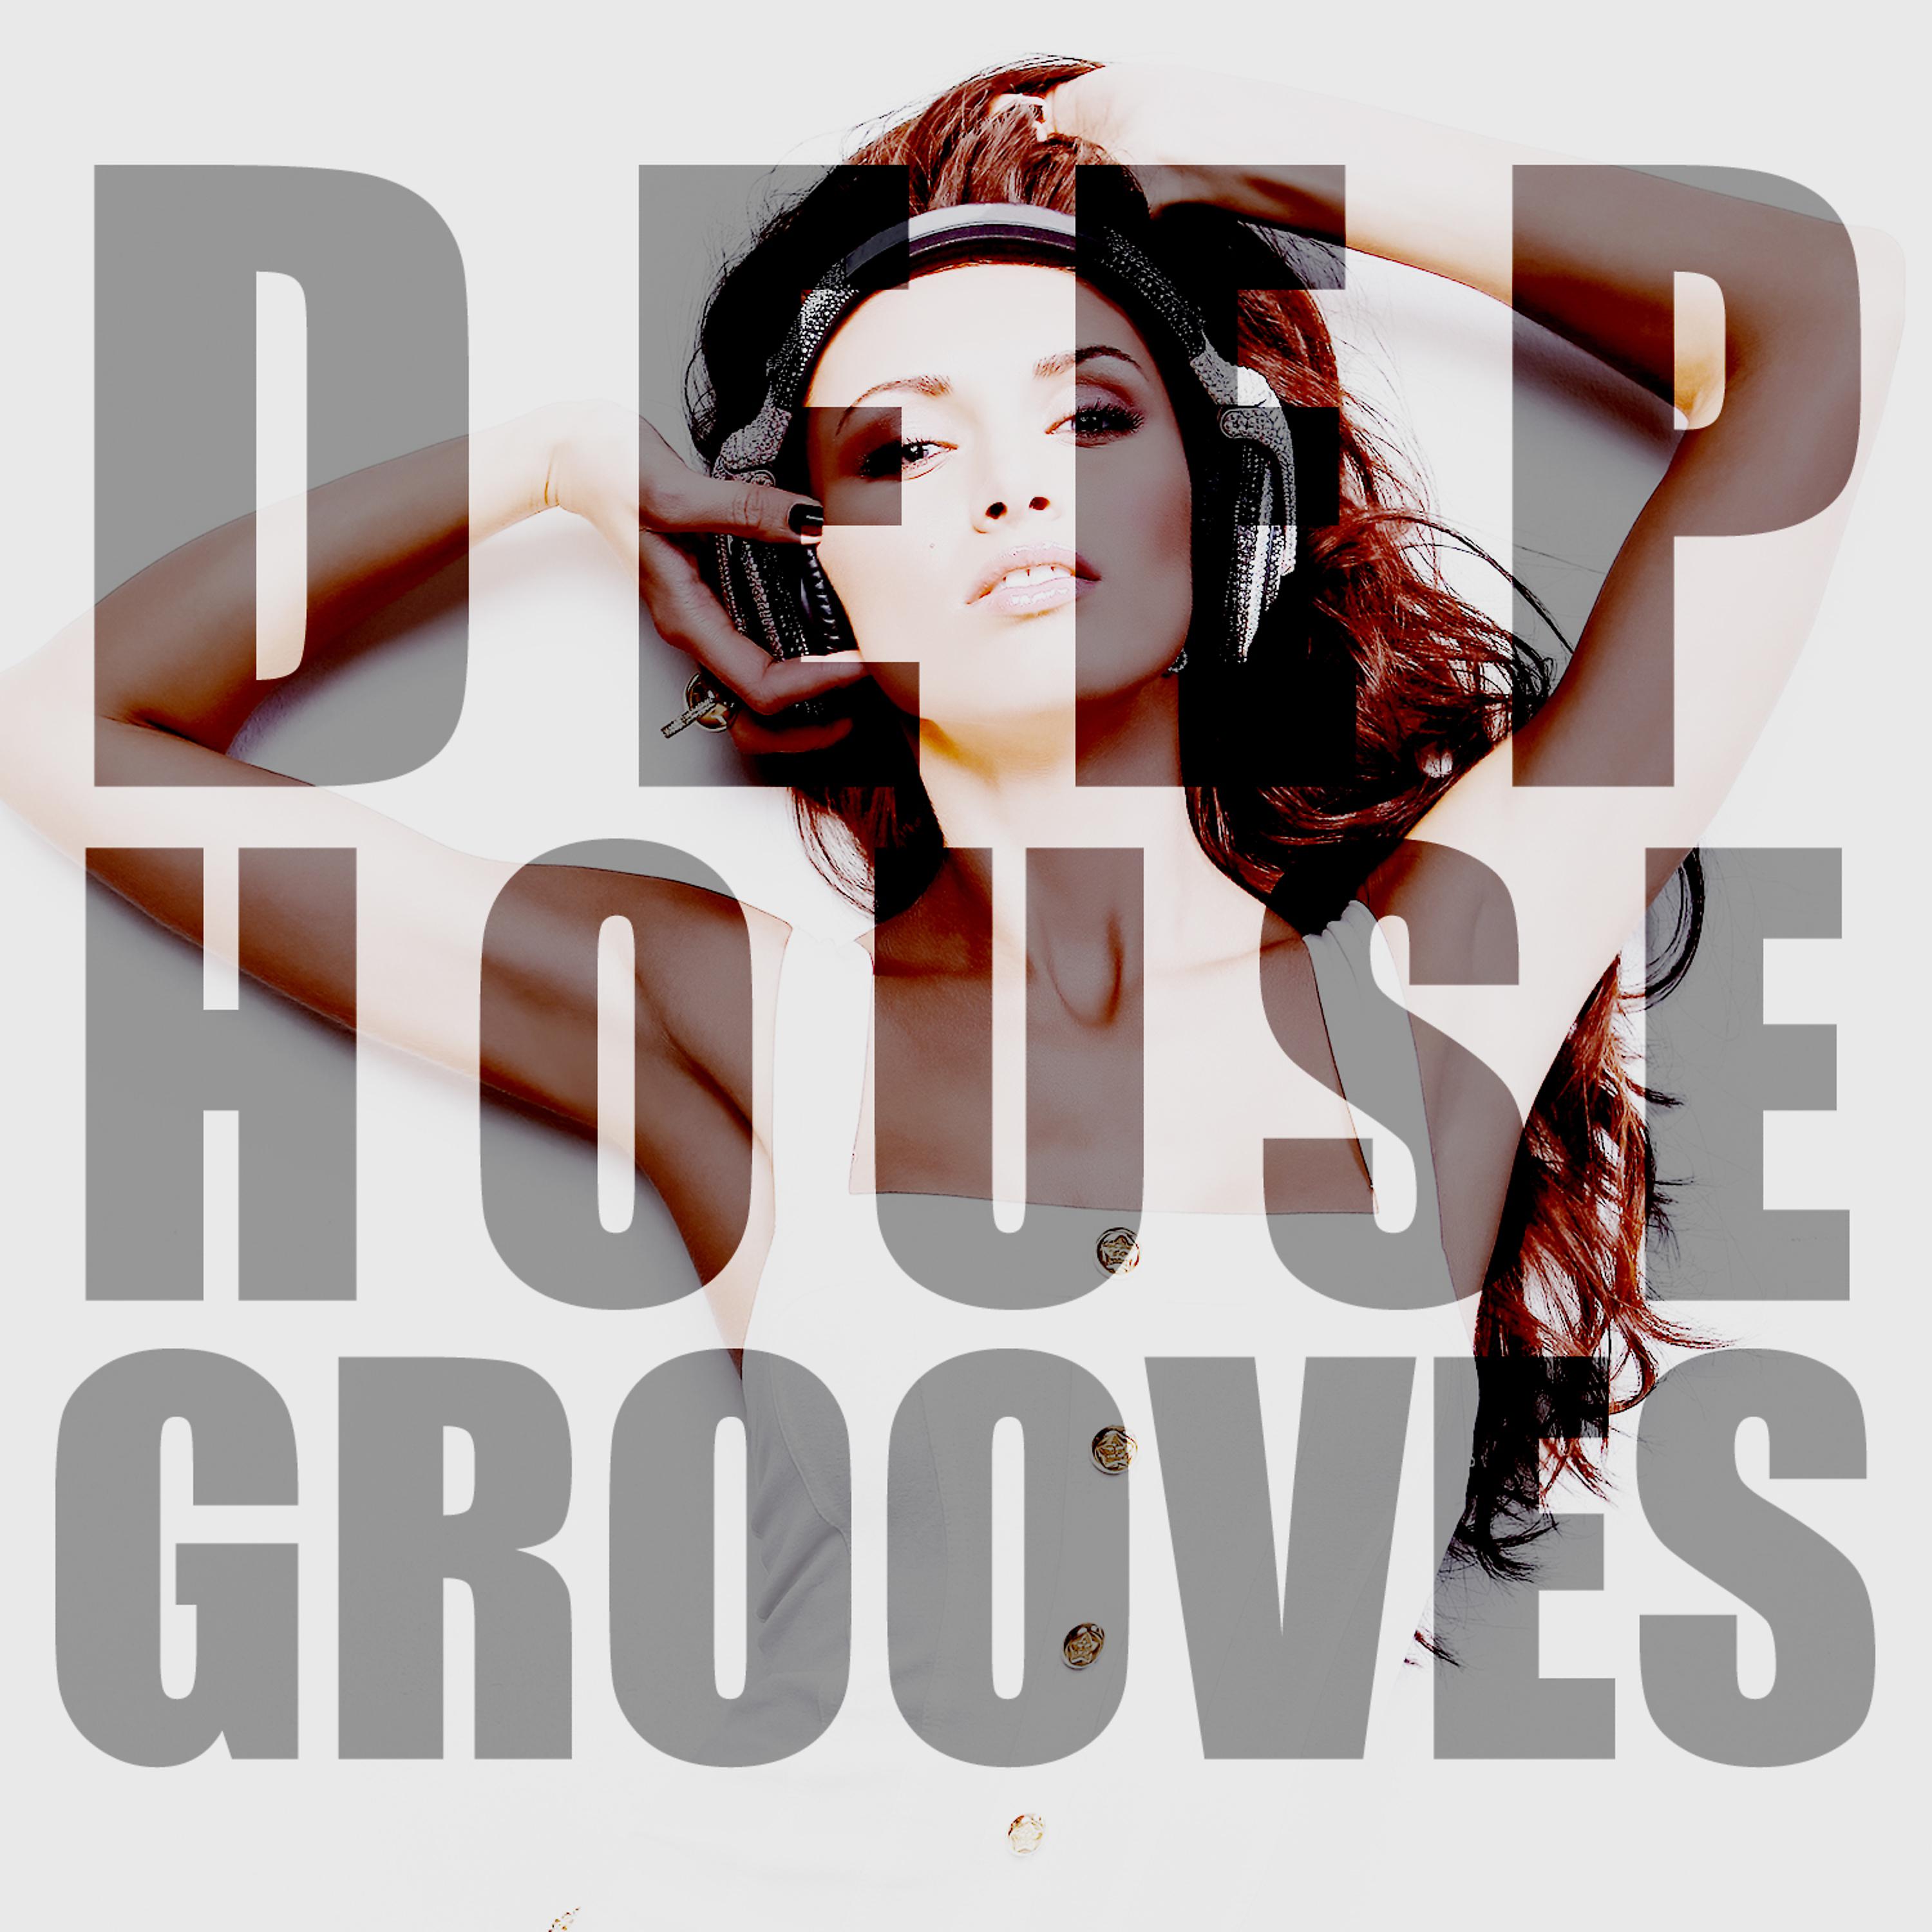 Постер альбома Deep House Grooves